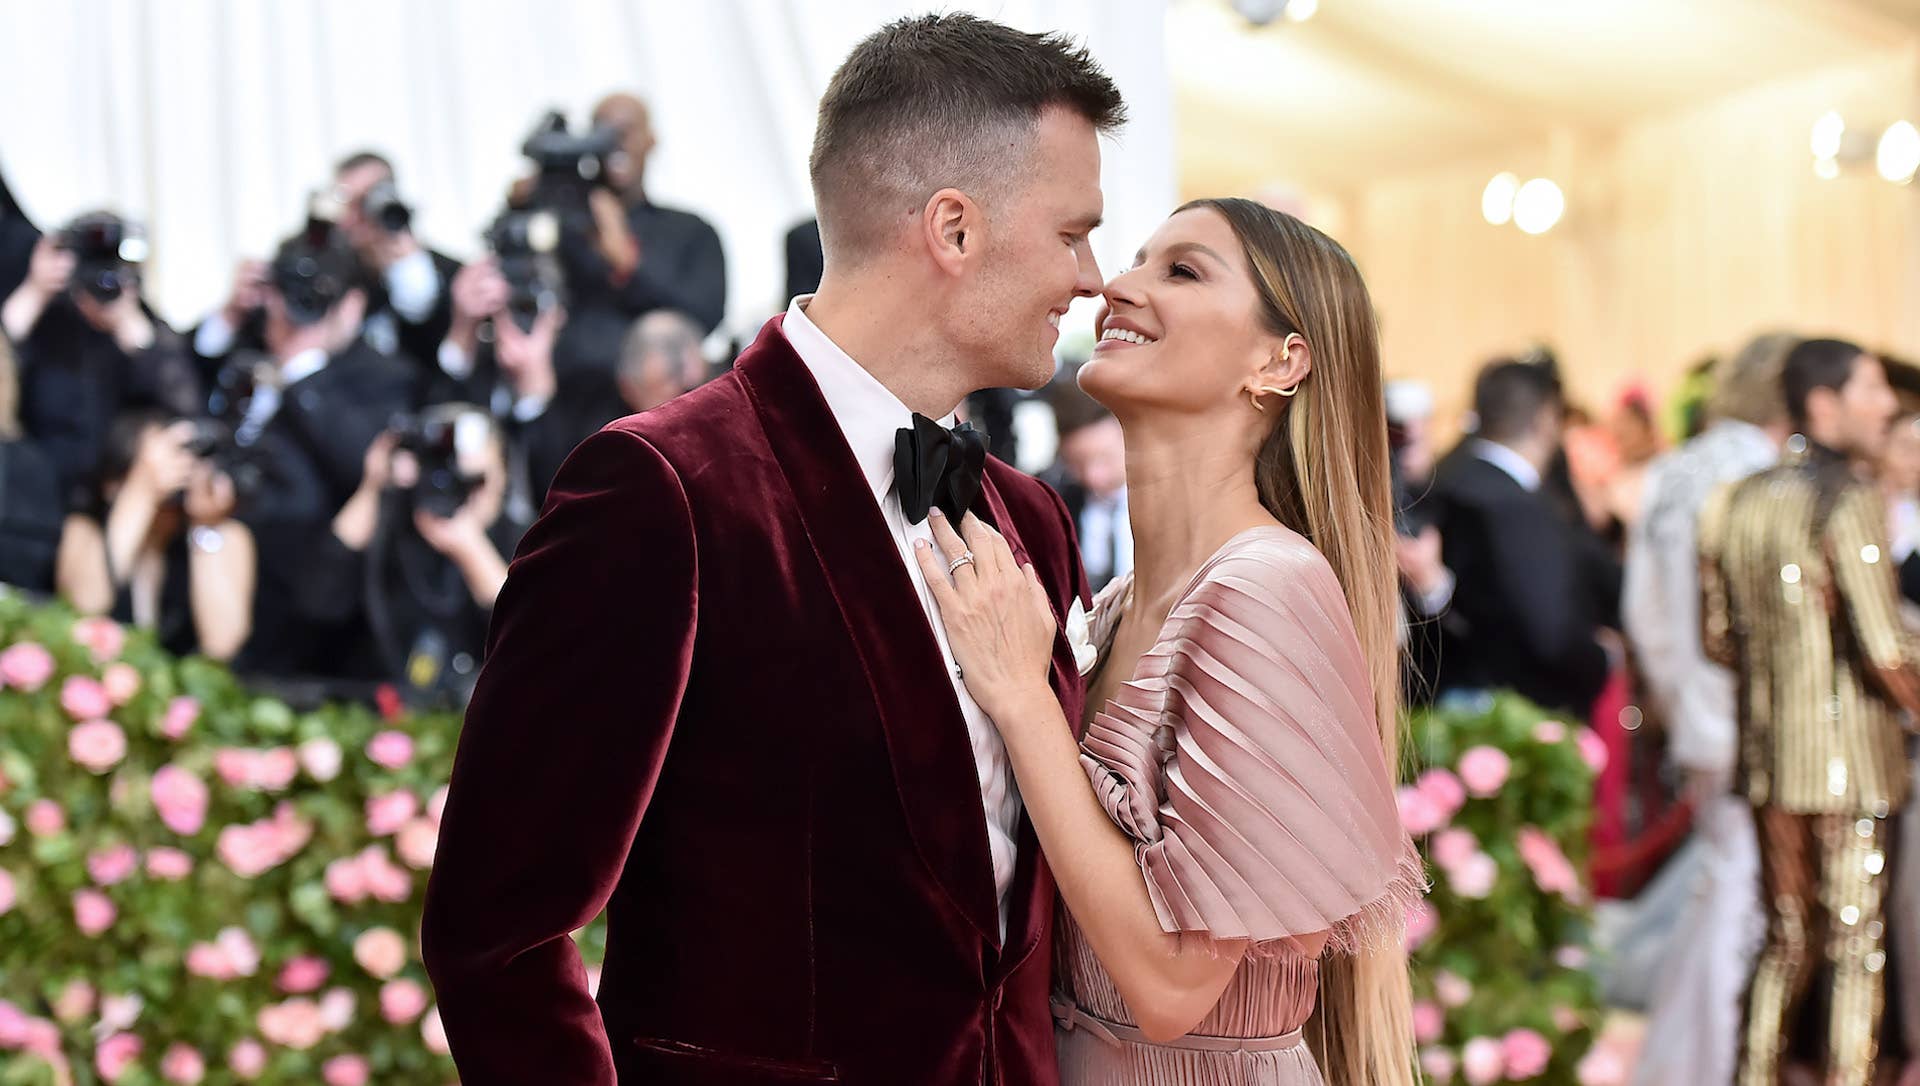 Tom Brady and Gisele Bündchen attend The 2019 Met Gala